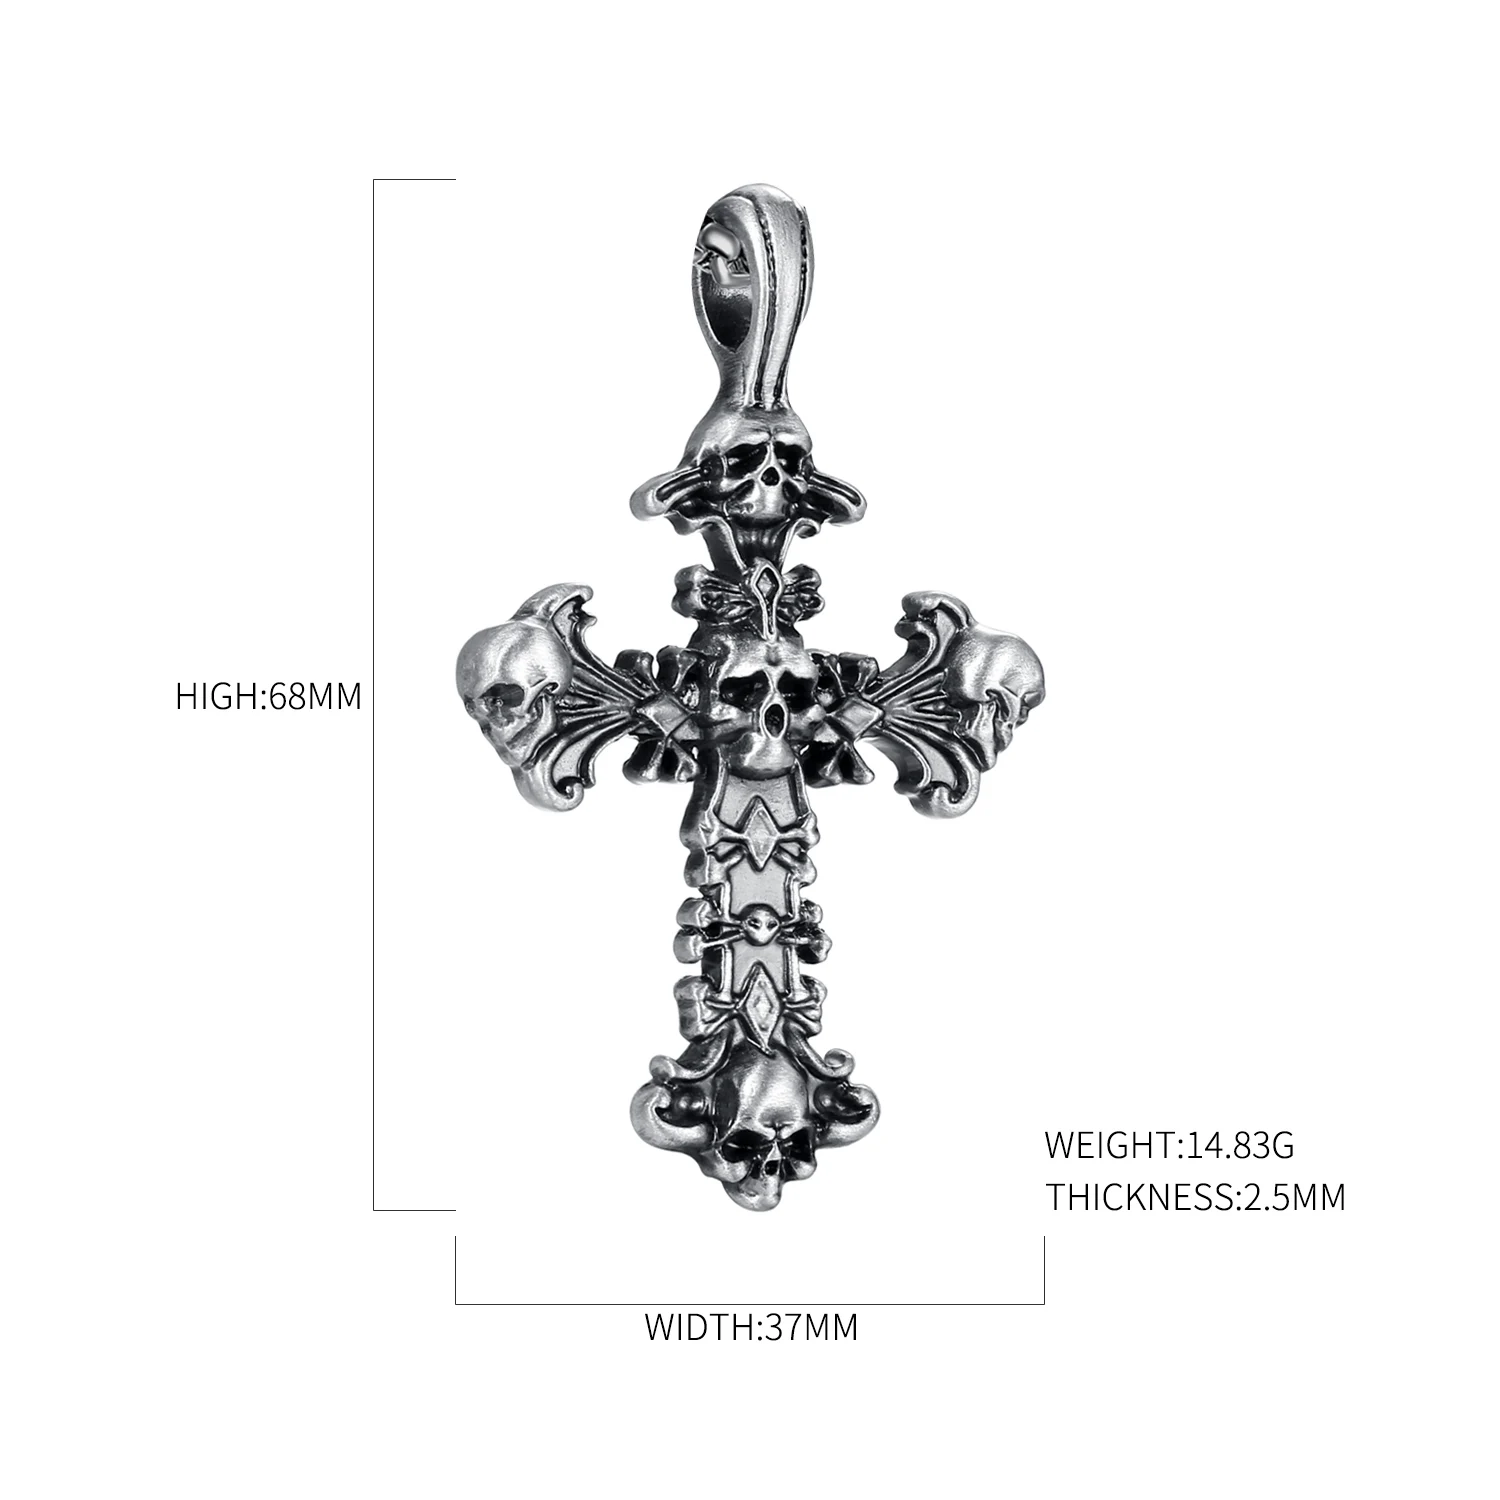 EVBEA череп, крест, ожерелье из нержавеющей стали, цепочка, кожа, западный крест, кулон, злой меч, христианские подарки для папы и мужчины, Seren